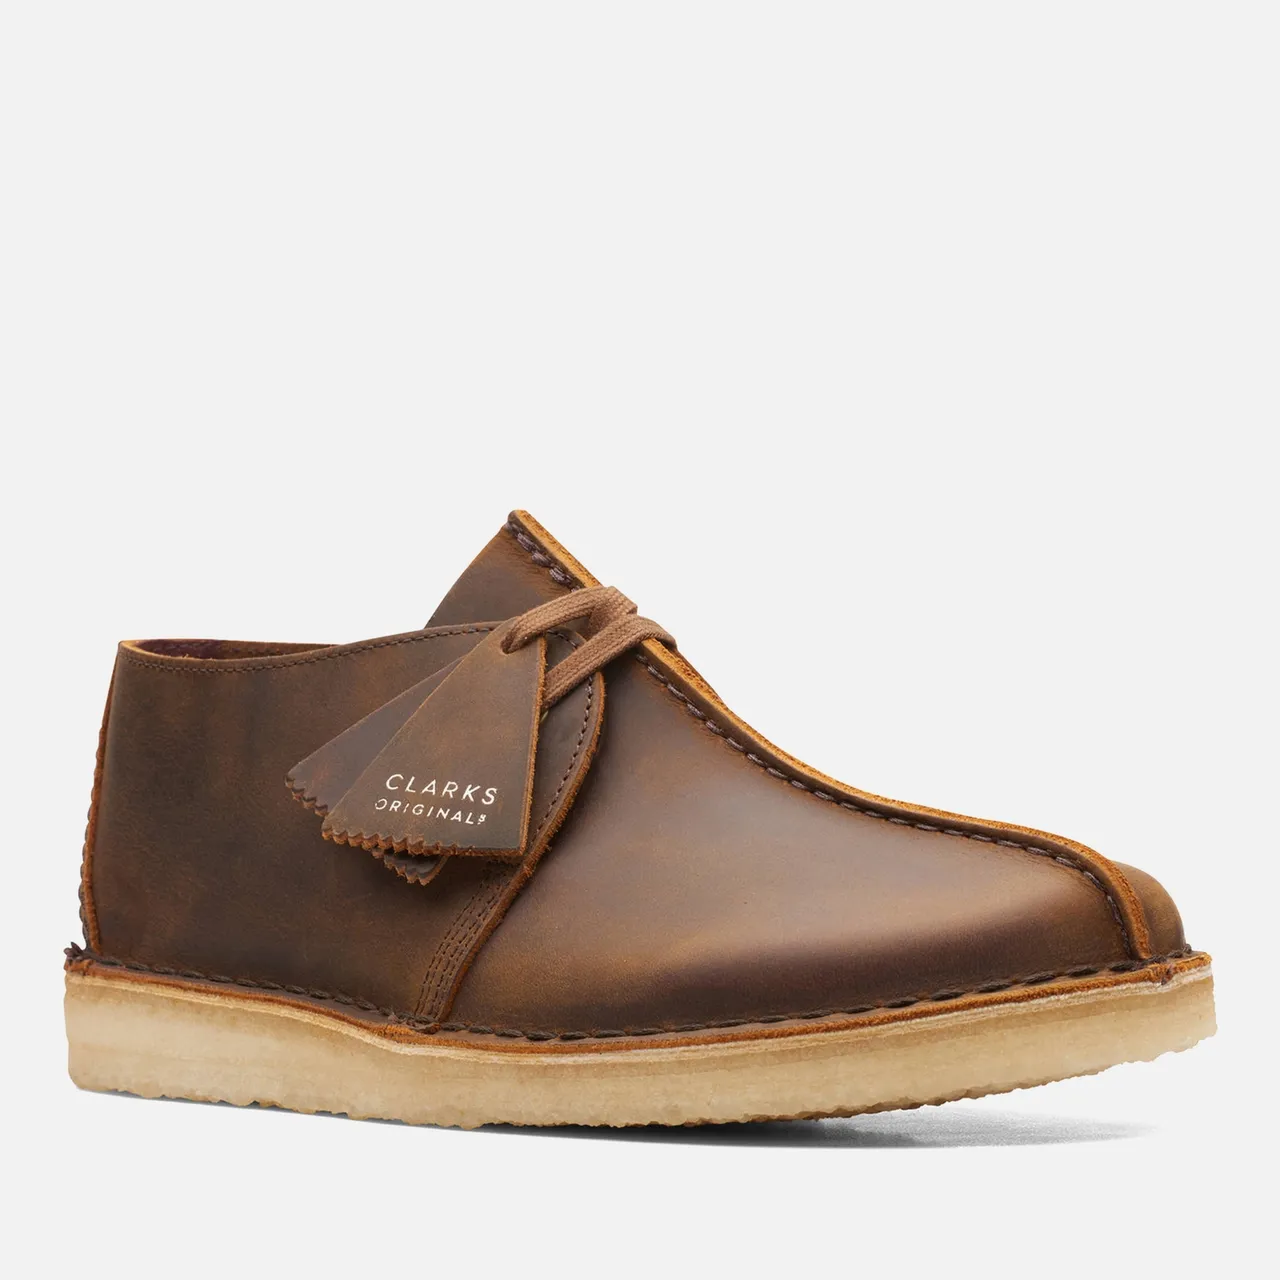 Clarks Originals Men's Desert Trek Leather Shoes - Beeswax - UK